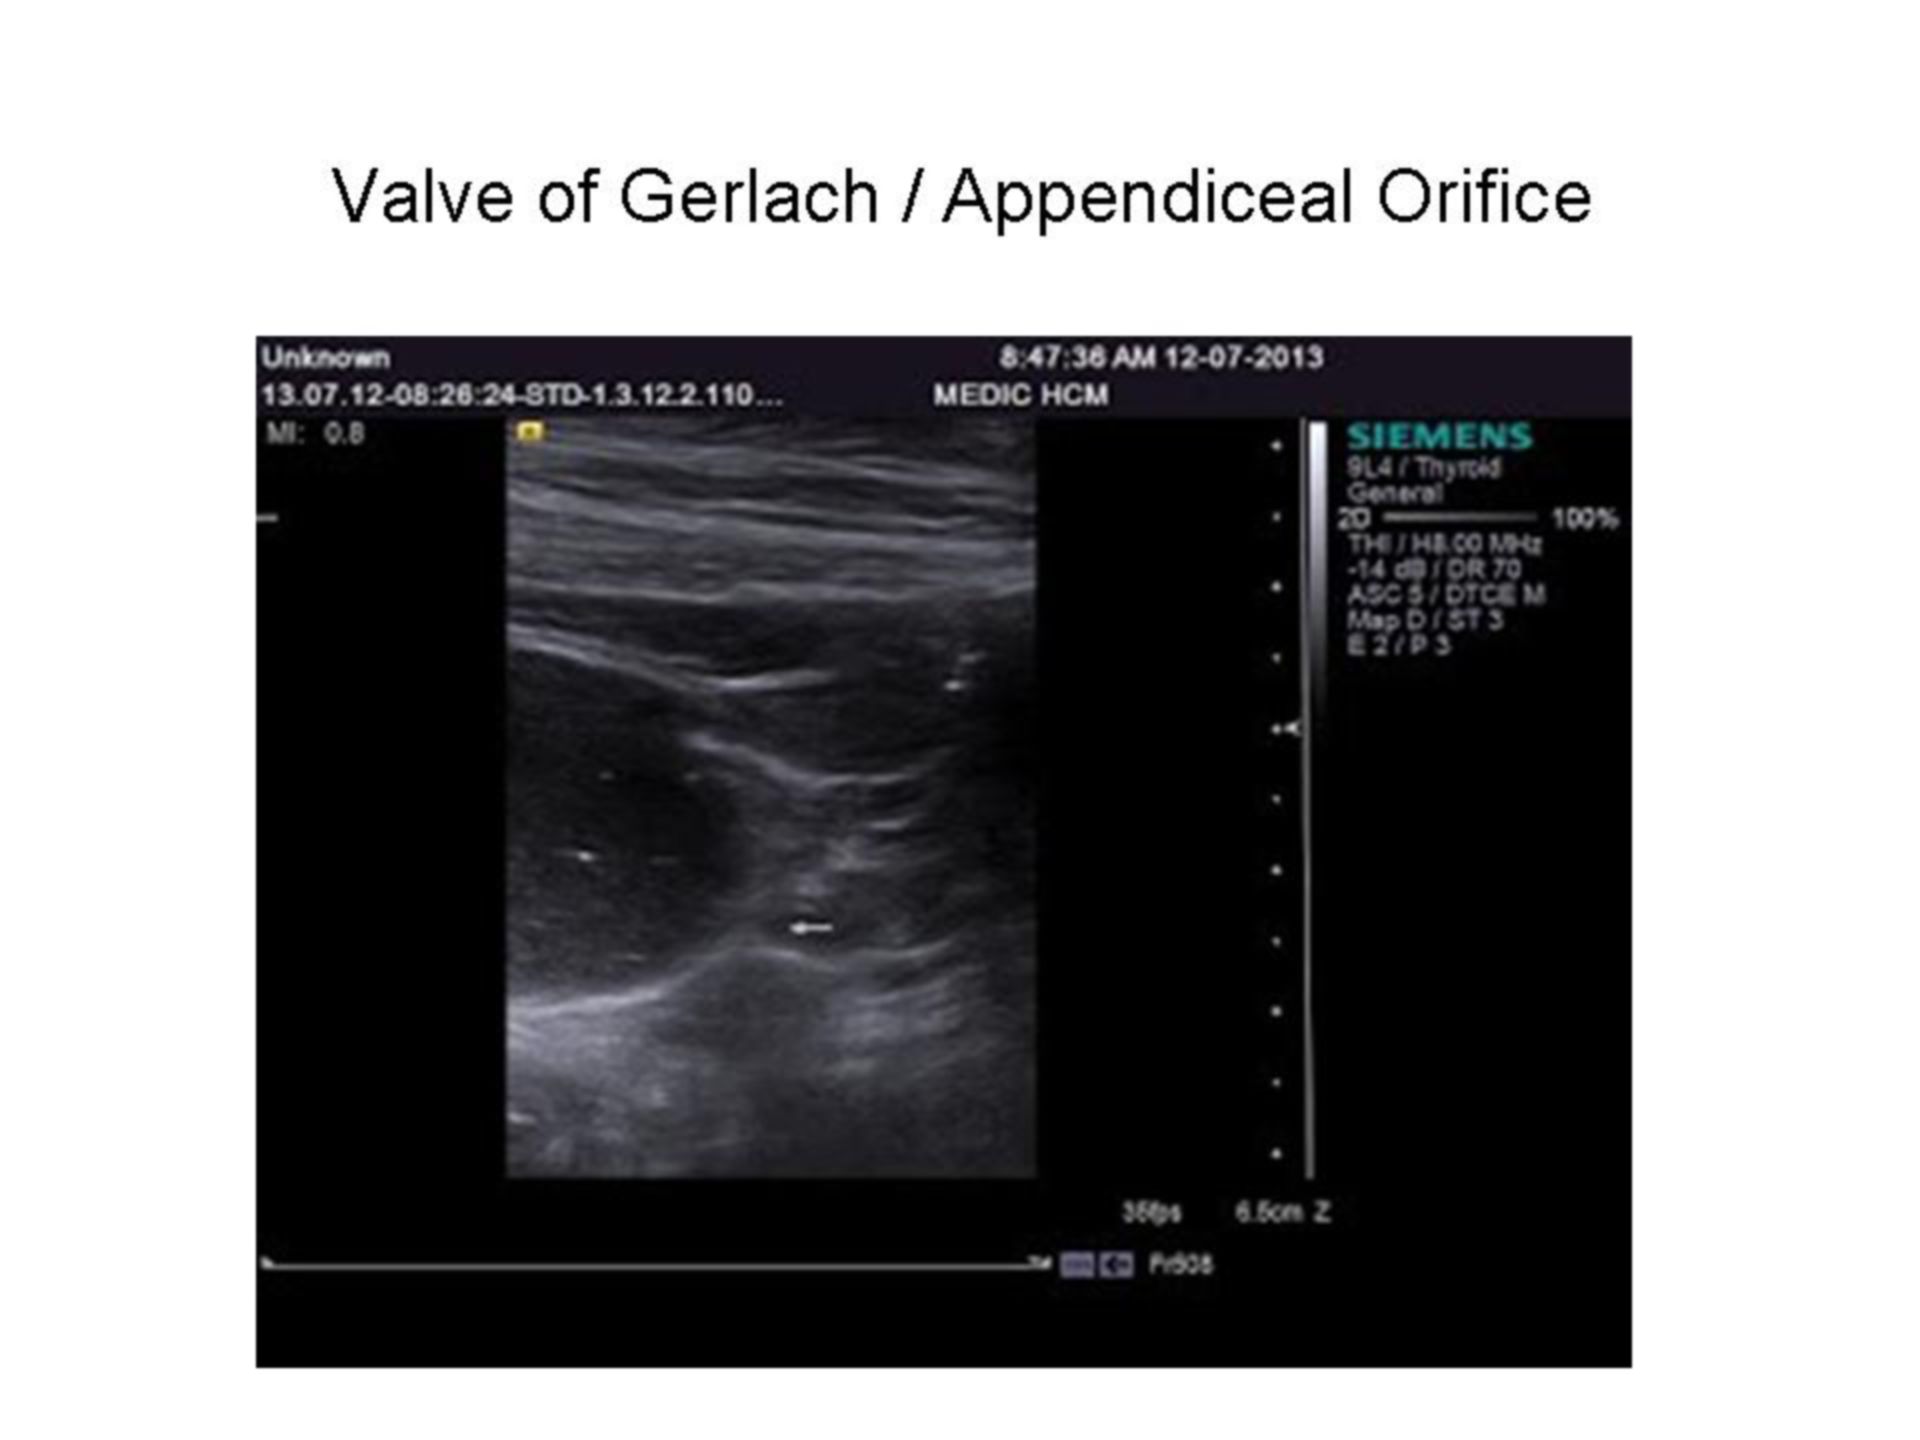 Appendiceal orifice on Ultrasound